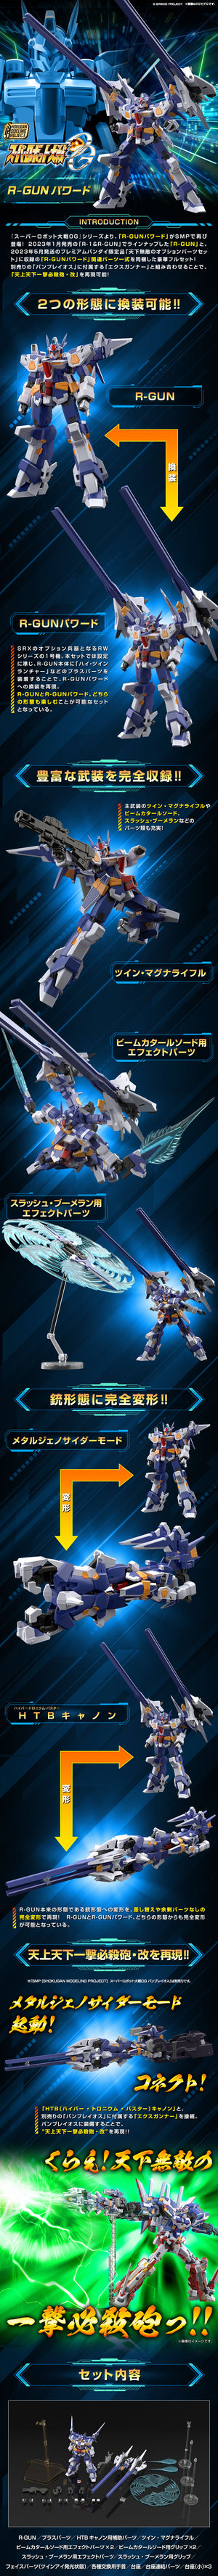 SMP [SHOKUGAN MODELING PROJECT] Super Robot Wars OG R-GUN Powered (April & May Ship Date)